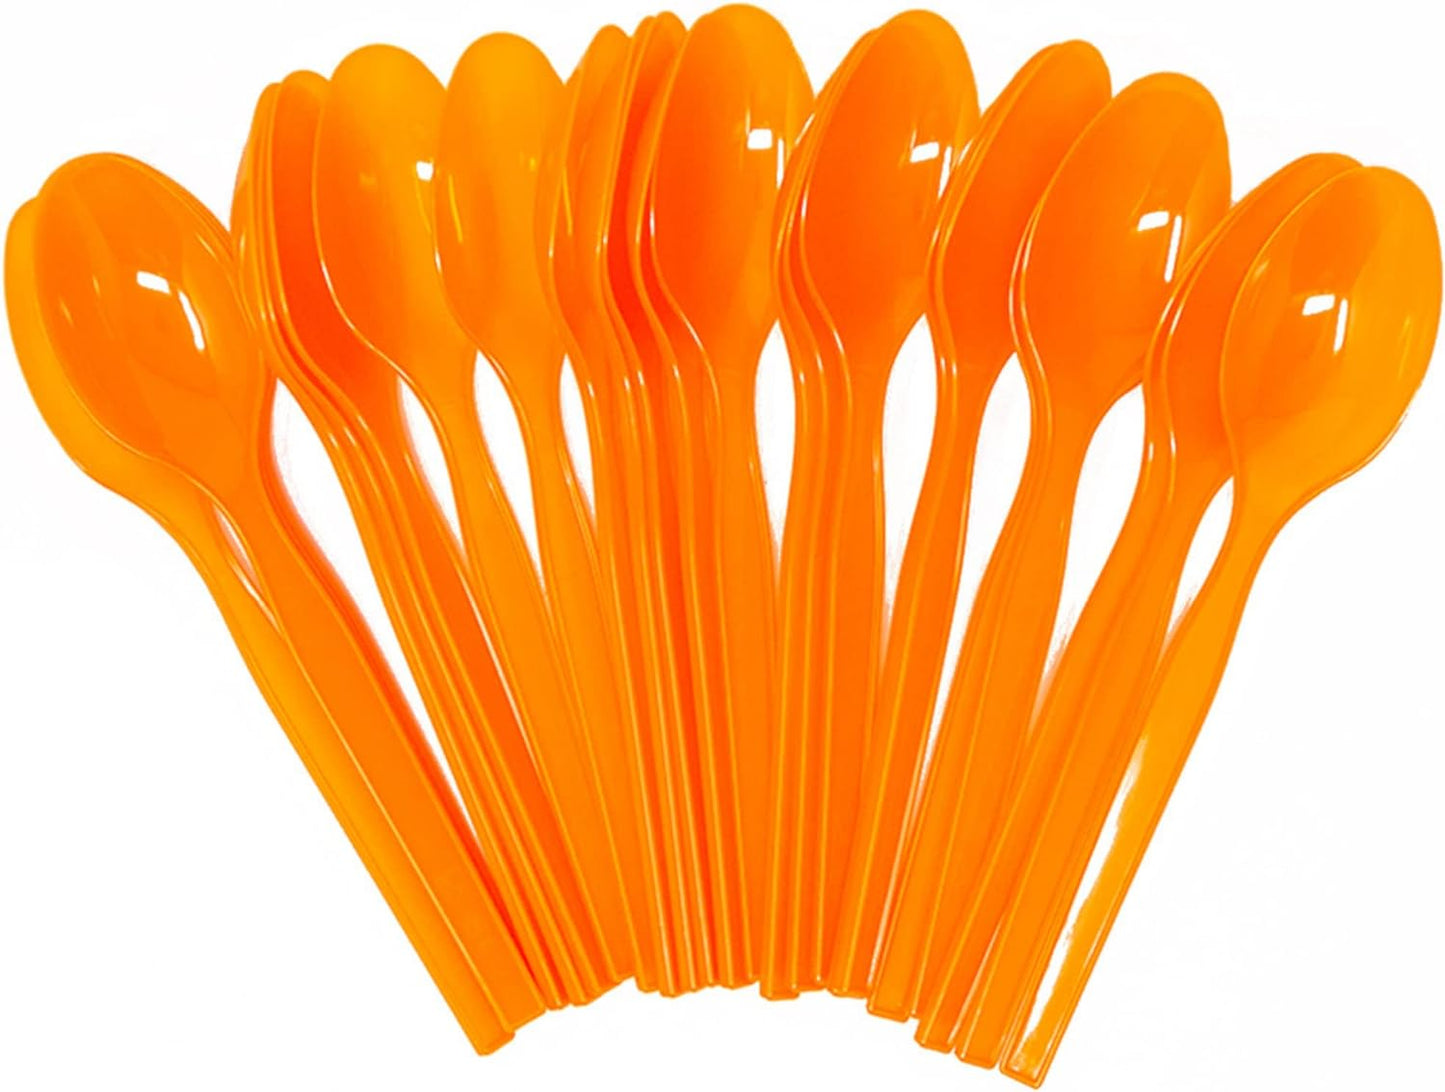 Orange Plastic Spoons - 200 Packs (24 Each)